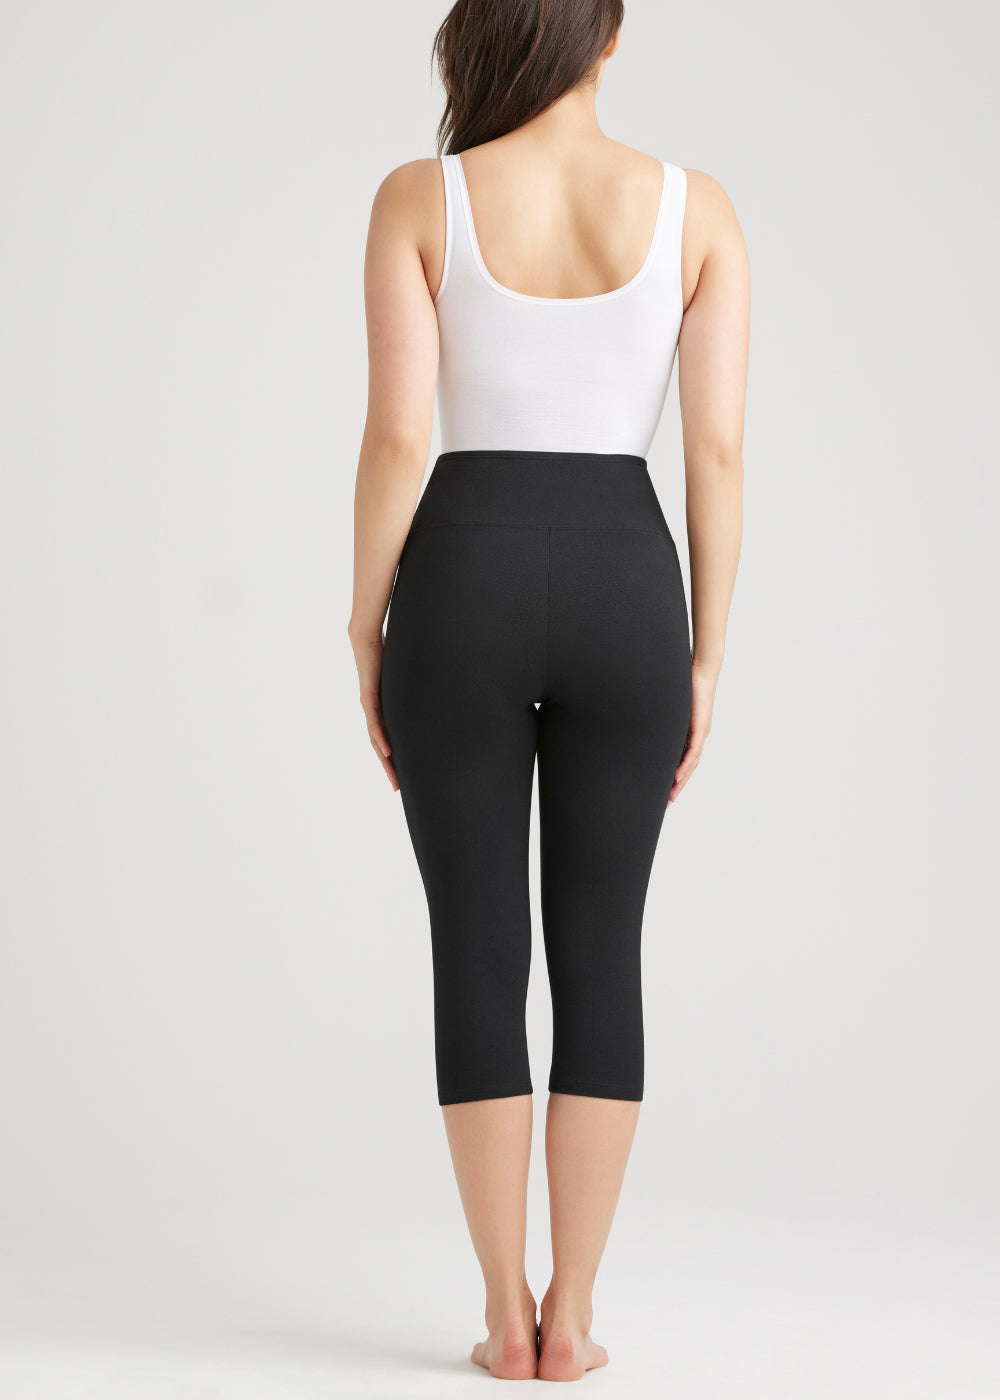 Buy Yummie women sportswear fit talia striped capris shaping leggings black  white Online